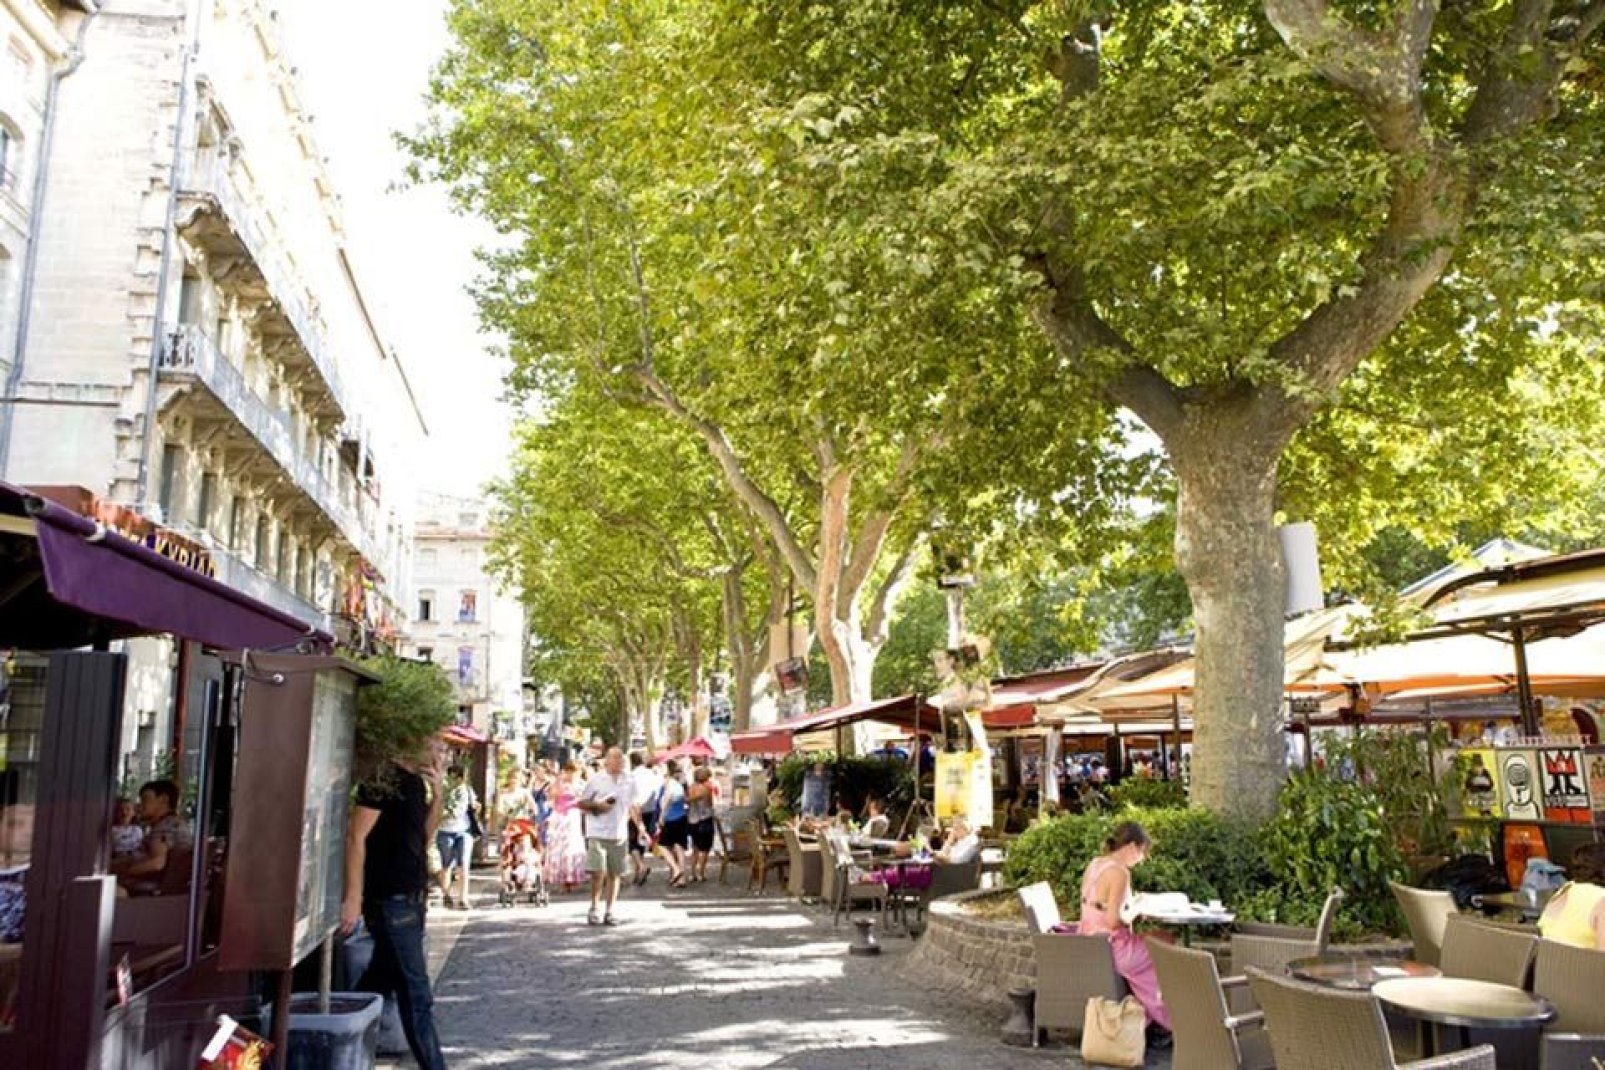 Die für ihre Lebensqualität bekannte Stadt verfügt über 200 Grünflächen, was ihr im landesweiten Städtewettbewerb "Ville fleurie" die Auszeichnung "Schönste Stadt" einbrachte.